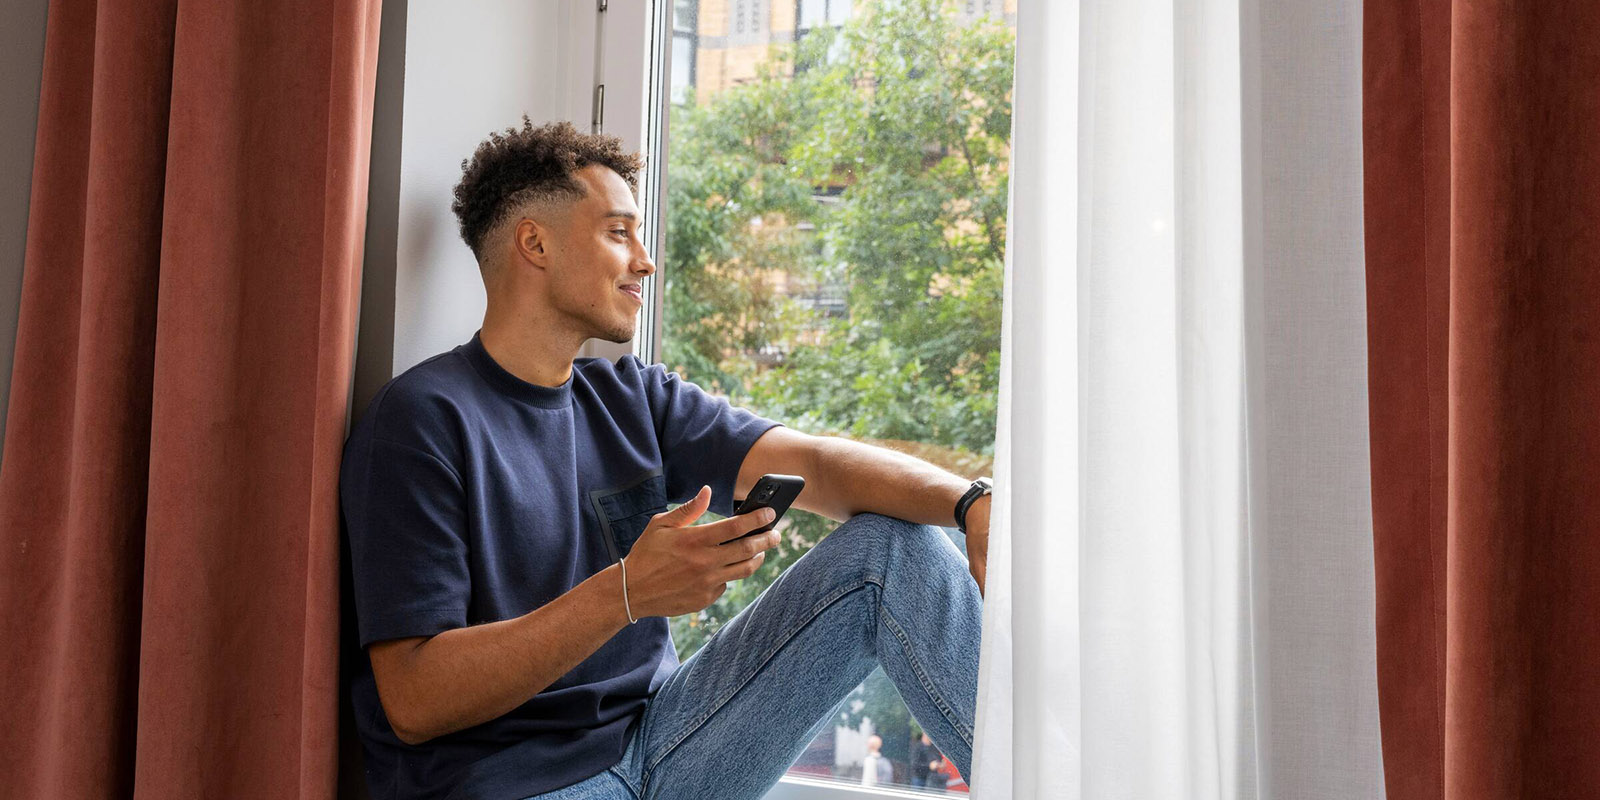 En ung kille med jeans och blå t-shirt, sitter i fönstret med sin mobil i handen och tittar ut.